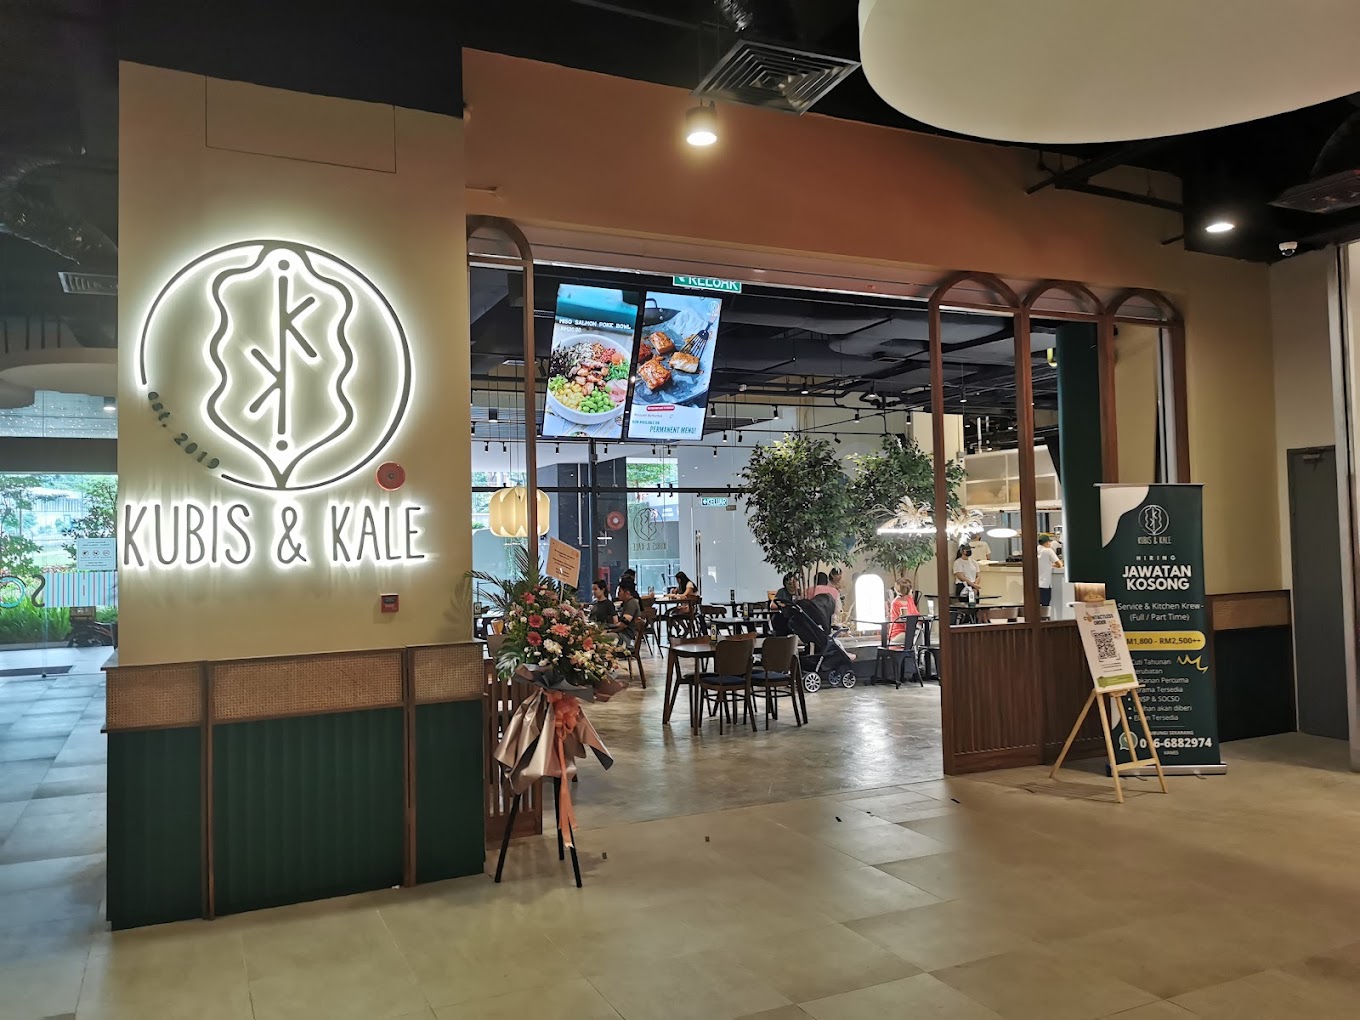 Bangsar South - Kubis & Kale - Storefront